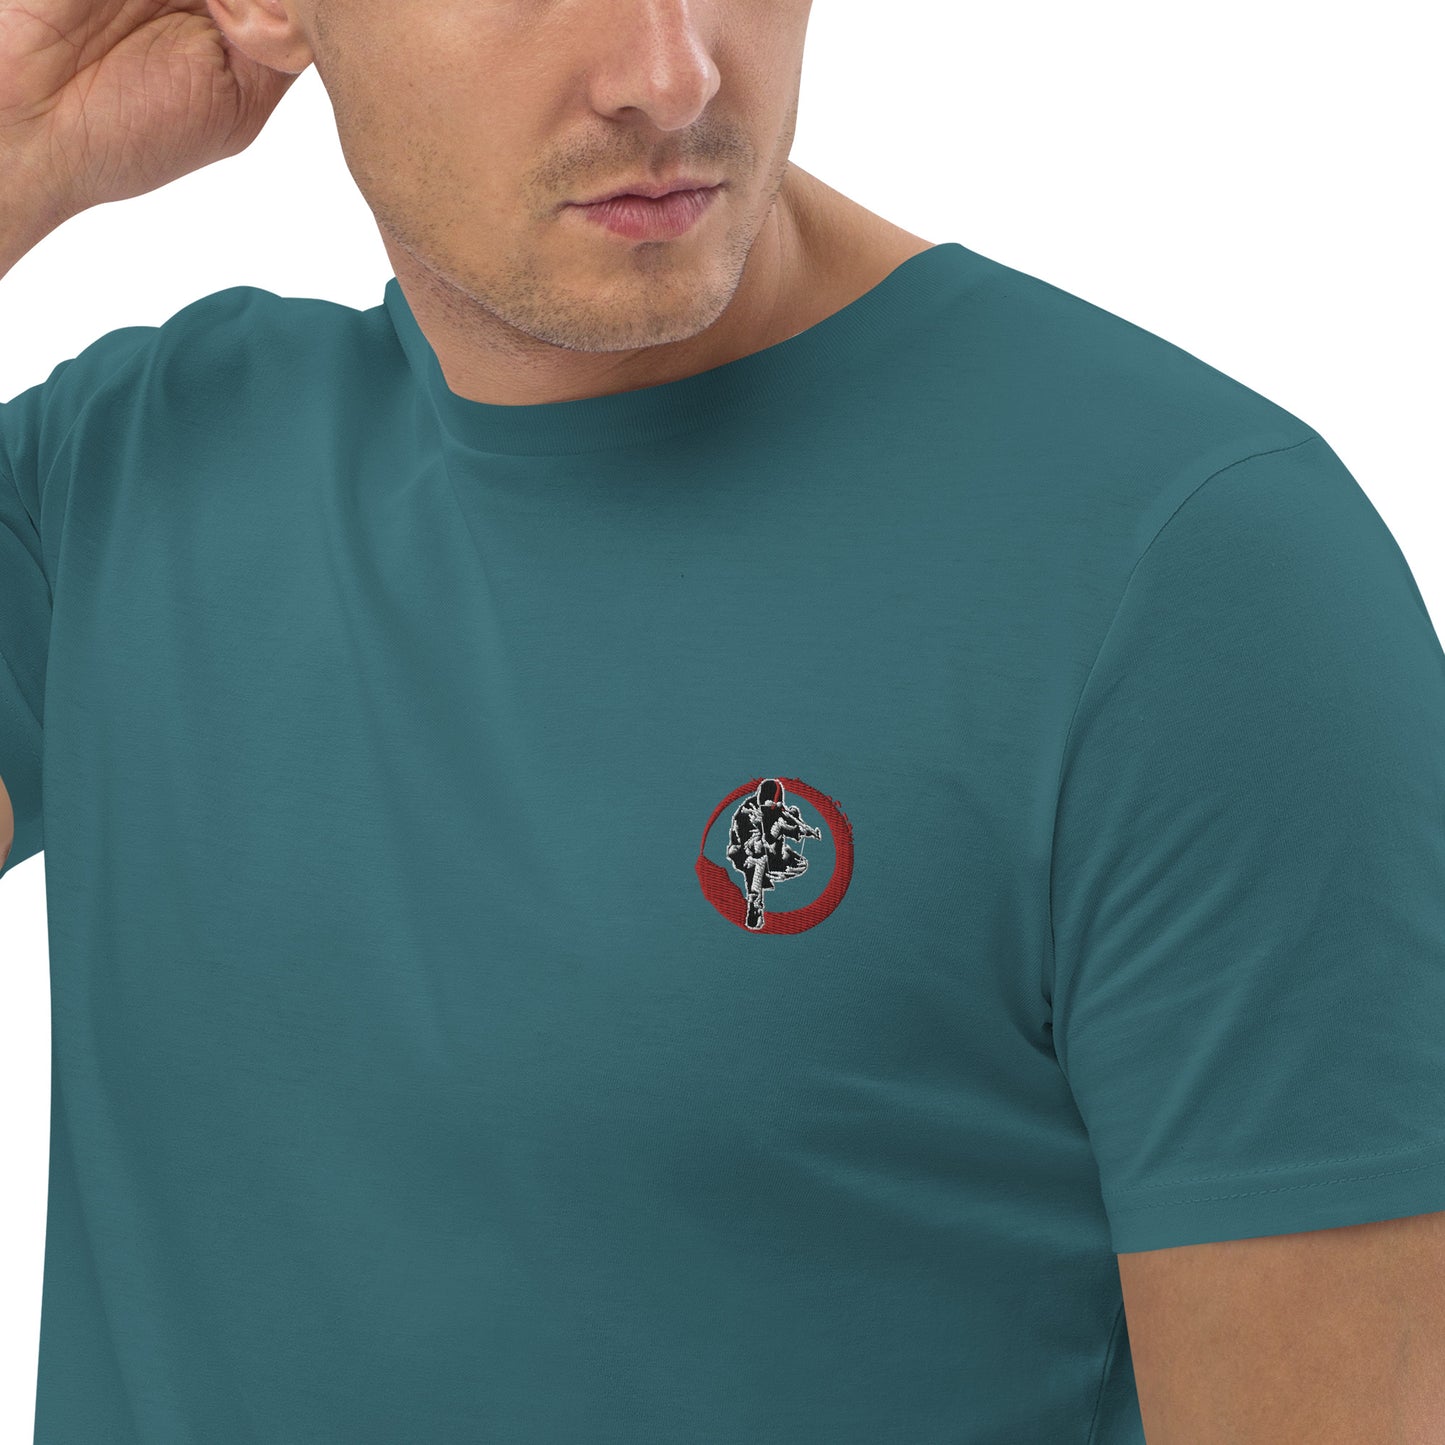 T-shirt unisexe en coton bio Ribellu Contour Rouge - Ochju Ochju Stargazer / S Ochju T-shirt unisexe en coton bio Ribellu Contour Rouge